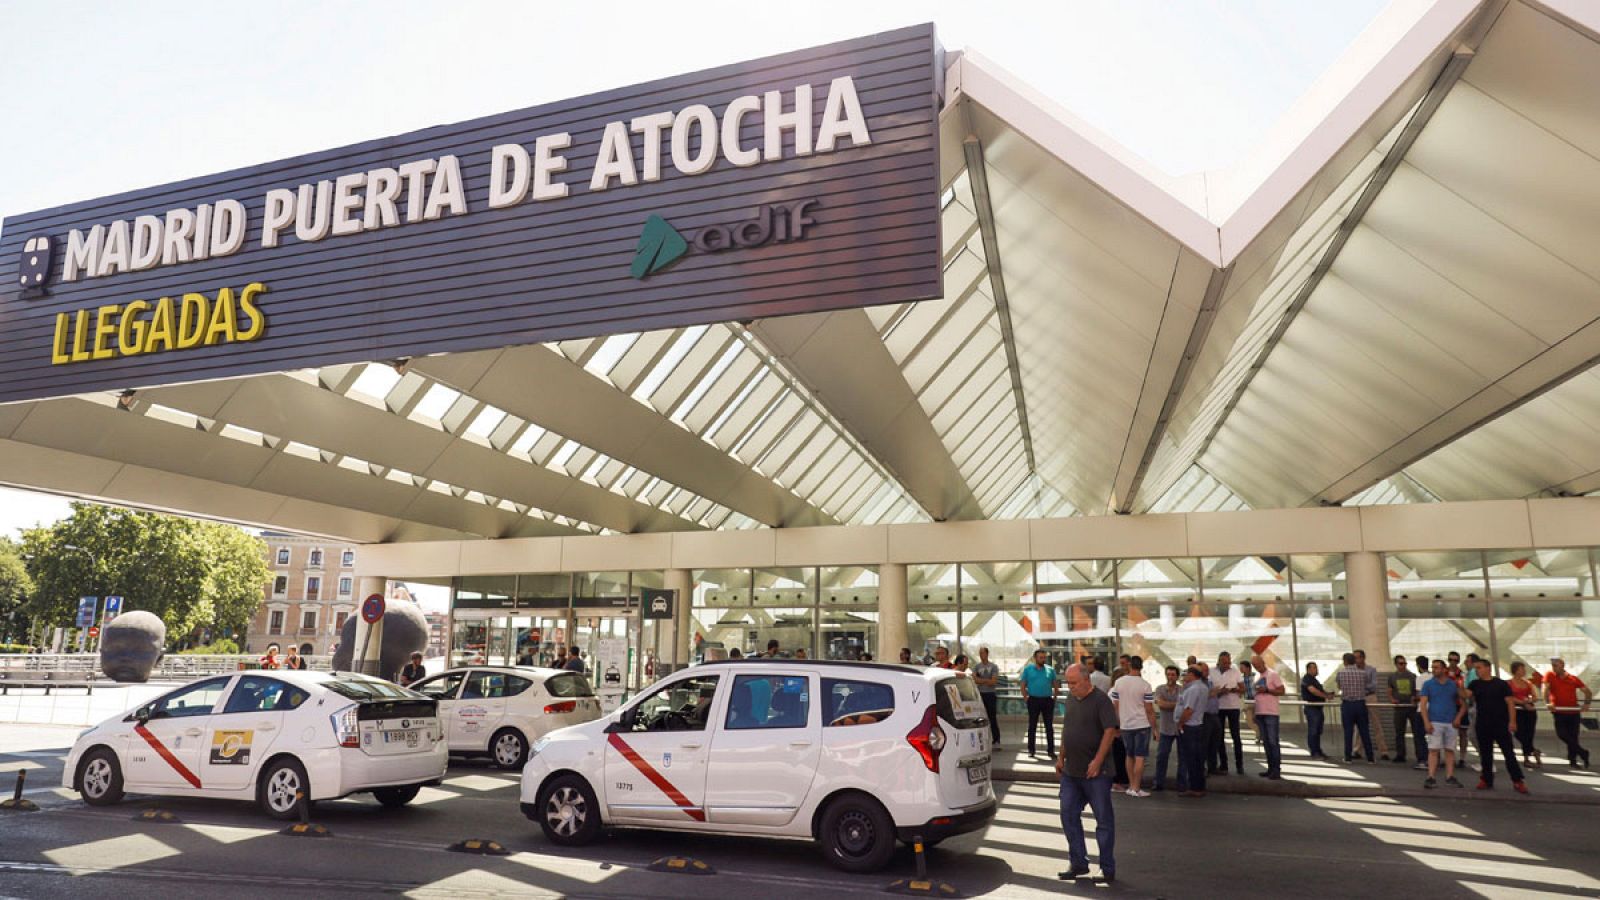 Taxis en huelga estacionados en la puerta de llegadas de la estación Madrid Puerta de Atocha.